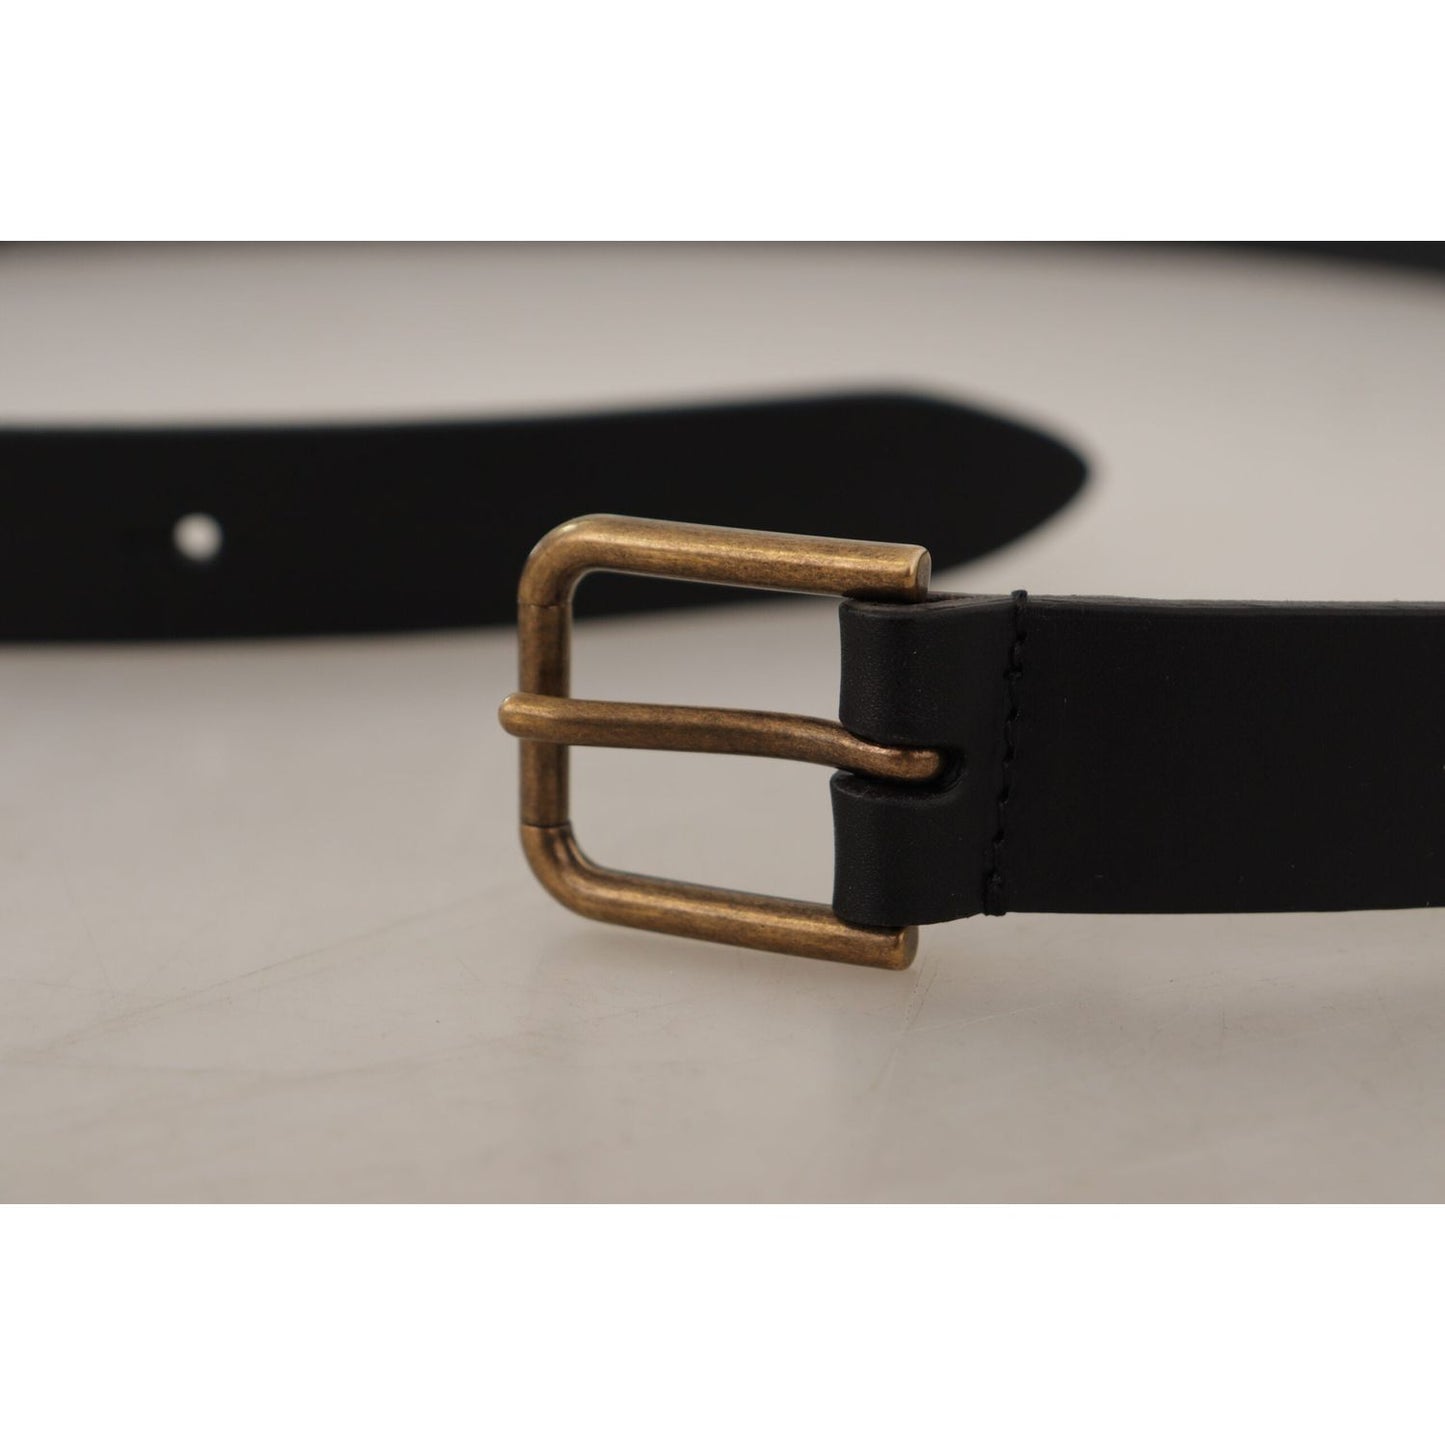 Dolce & Gabbana Elegant Black Leather Belt with Metal Buckle black-calf-leather-brass-logo-engraved-buckle-belt